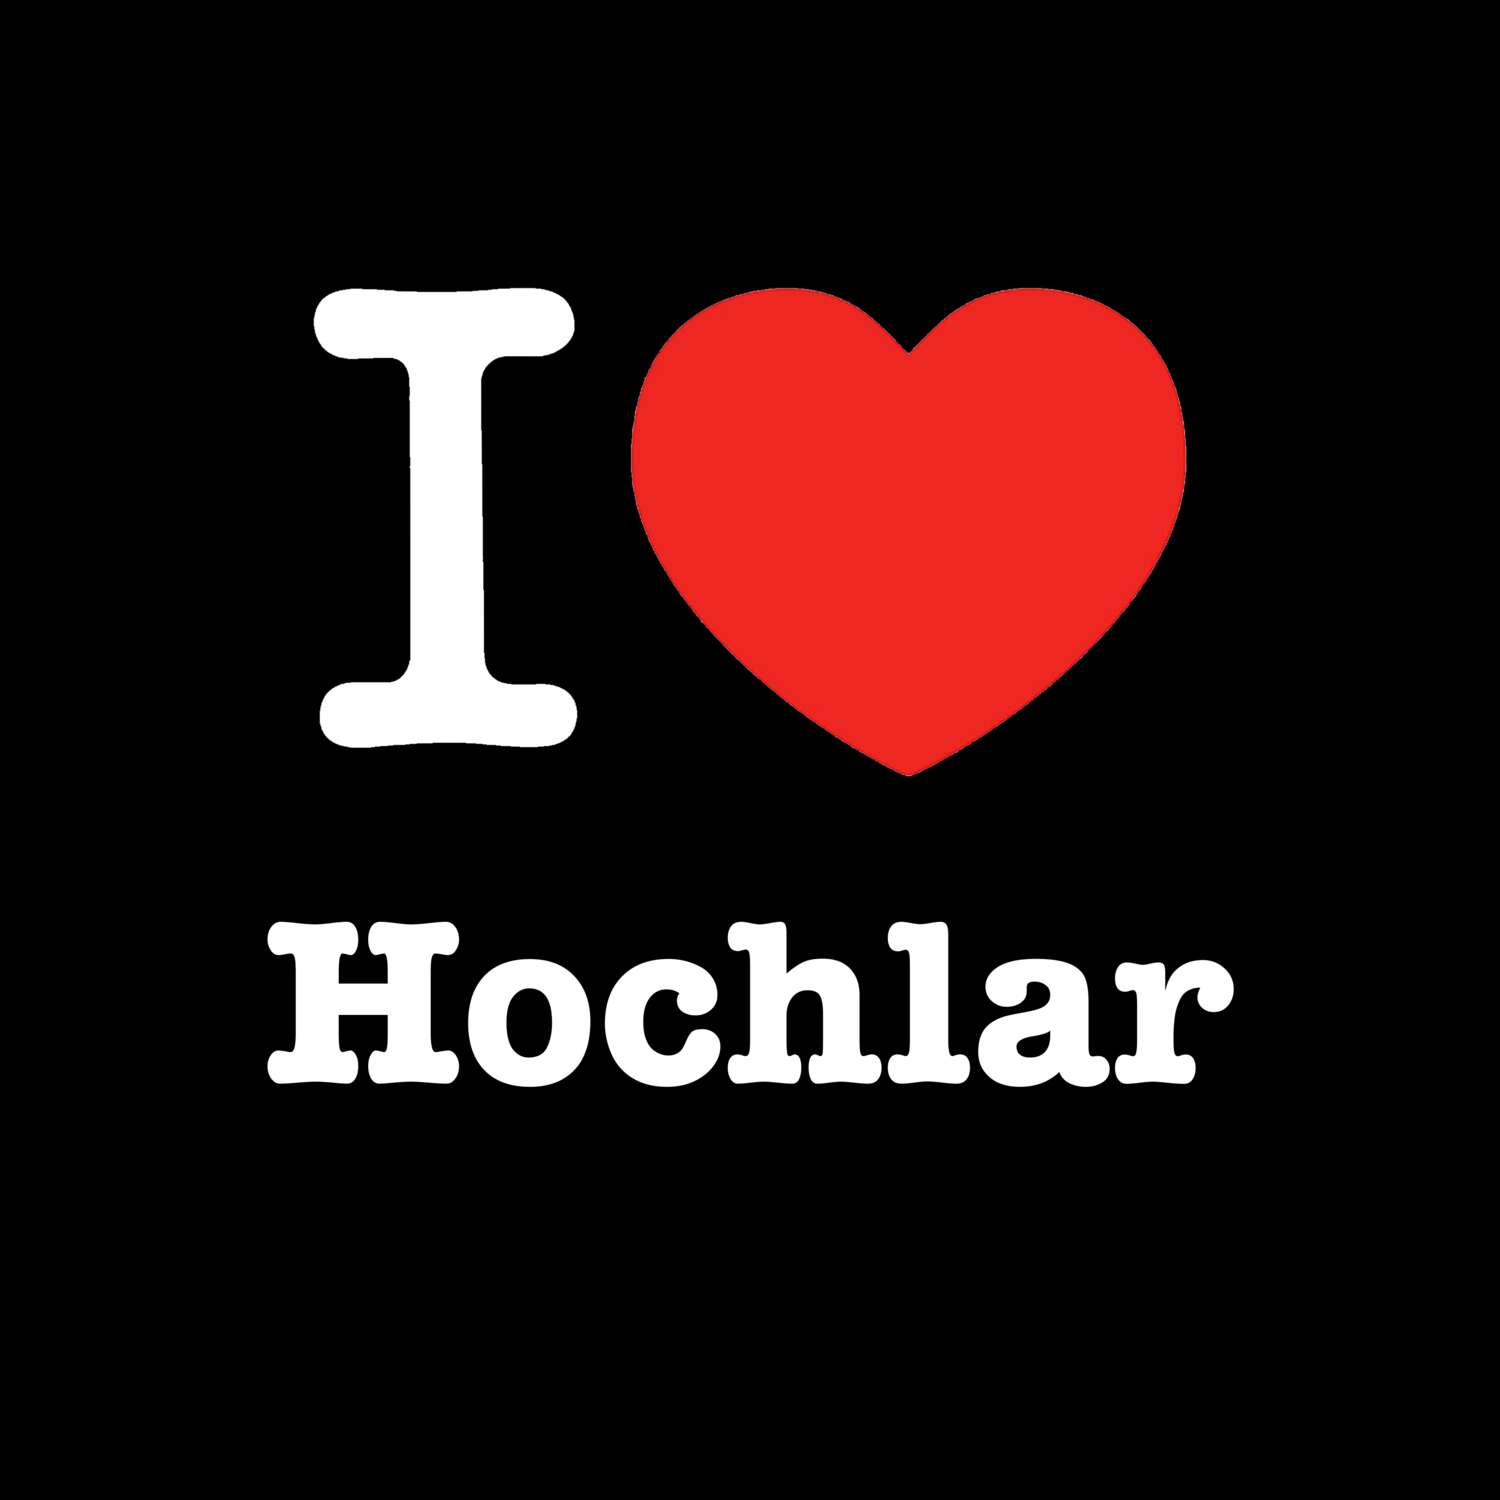 Hochlar T-Shirt »I love«